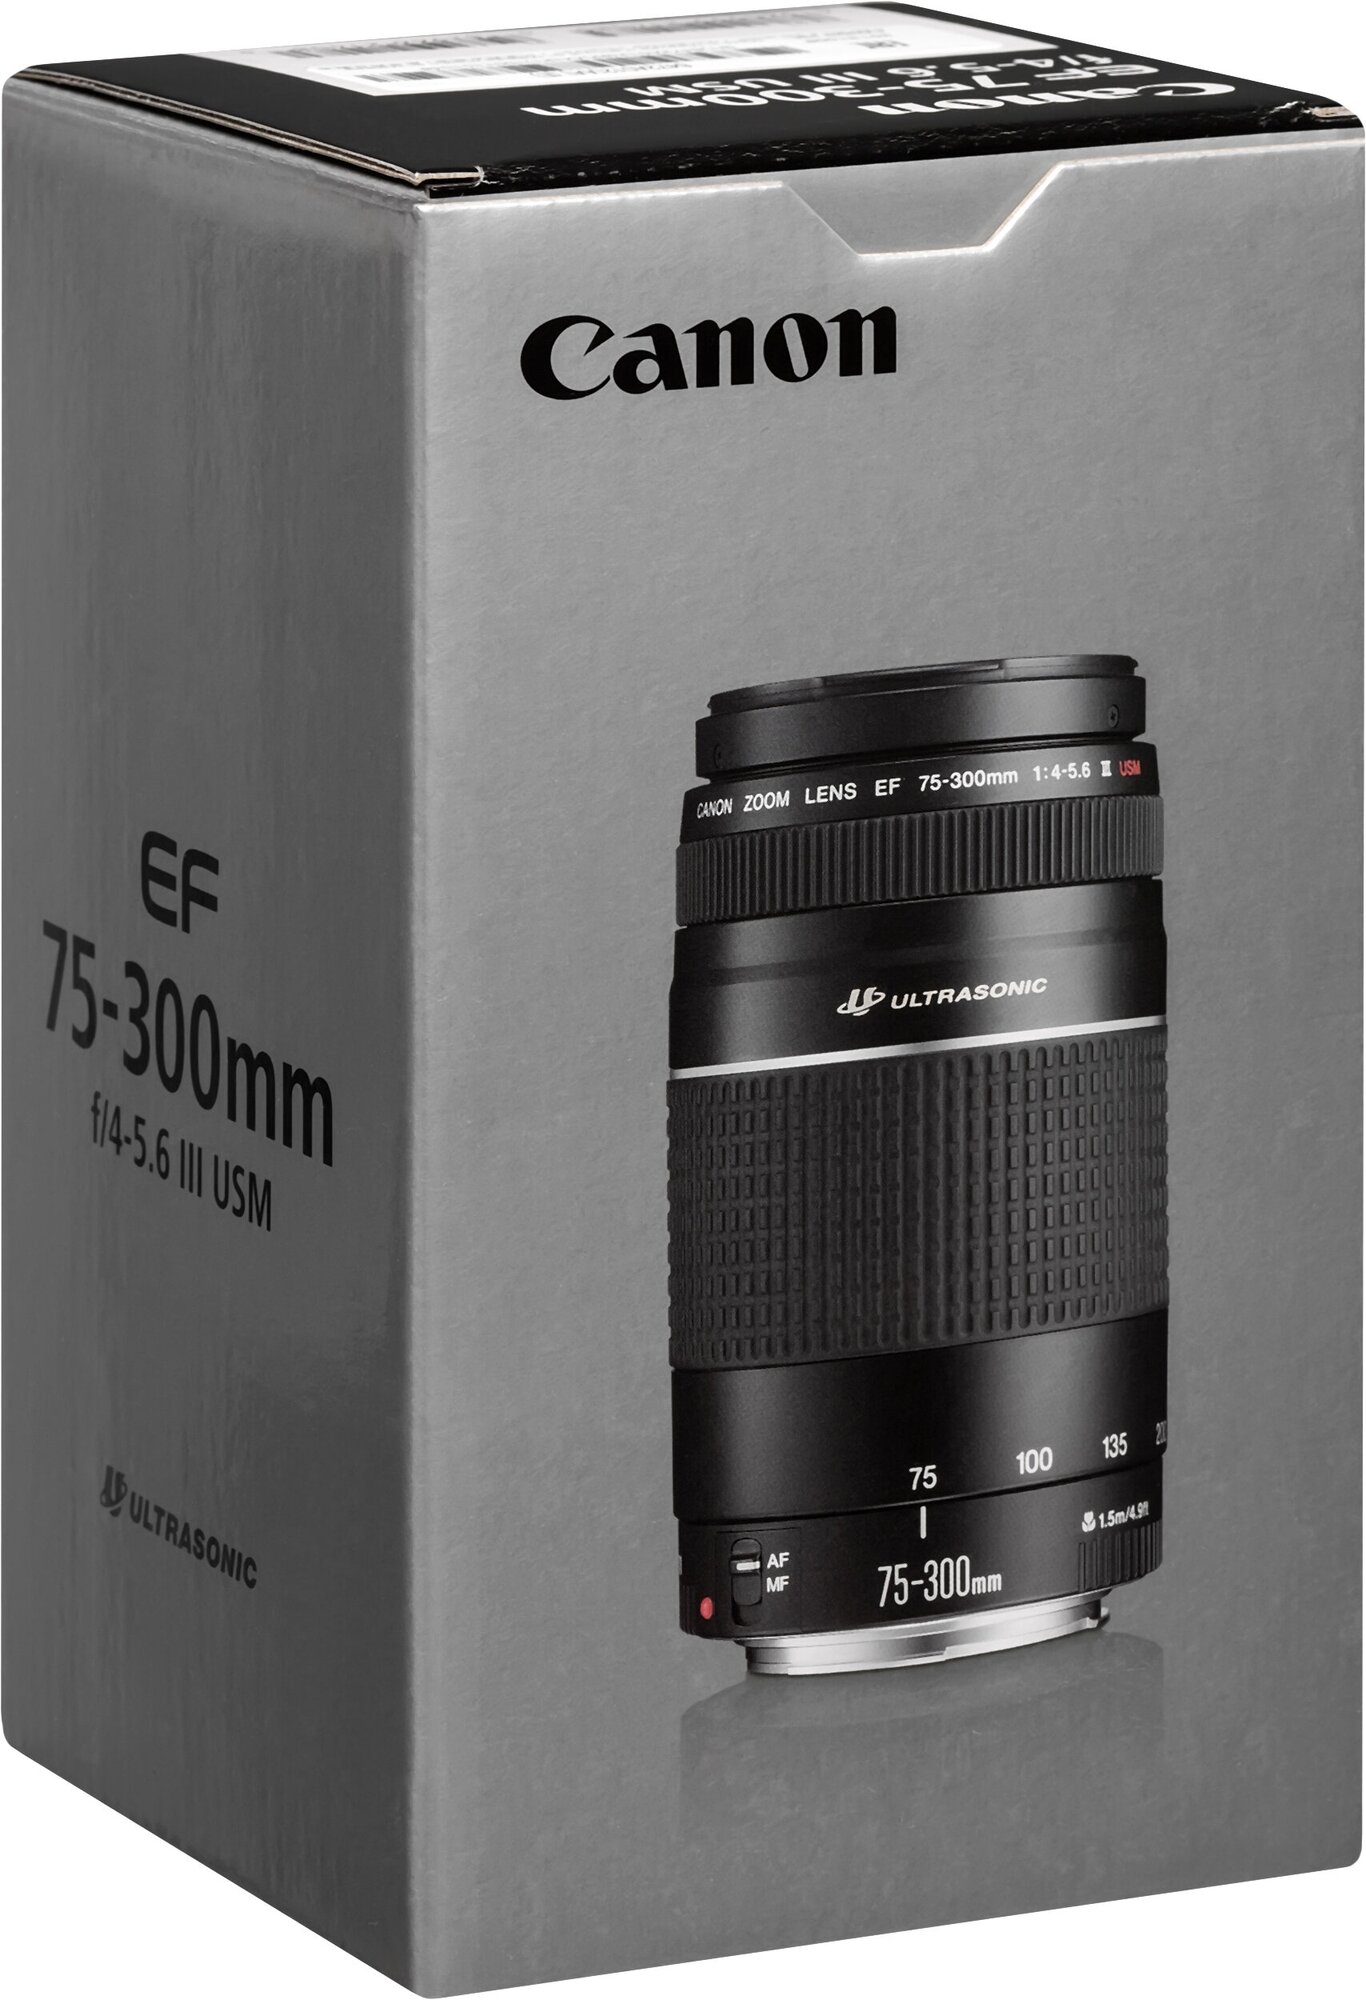 Объектив Canon EF 75-300mm f/4-56 III USM